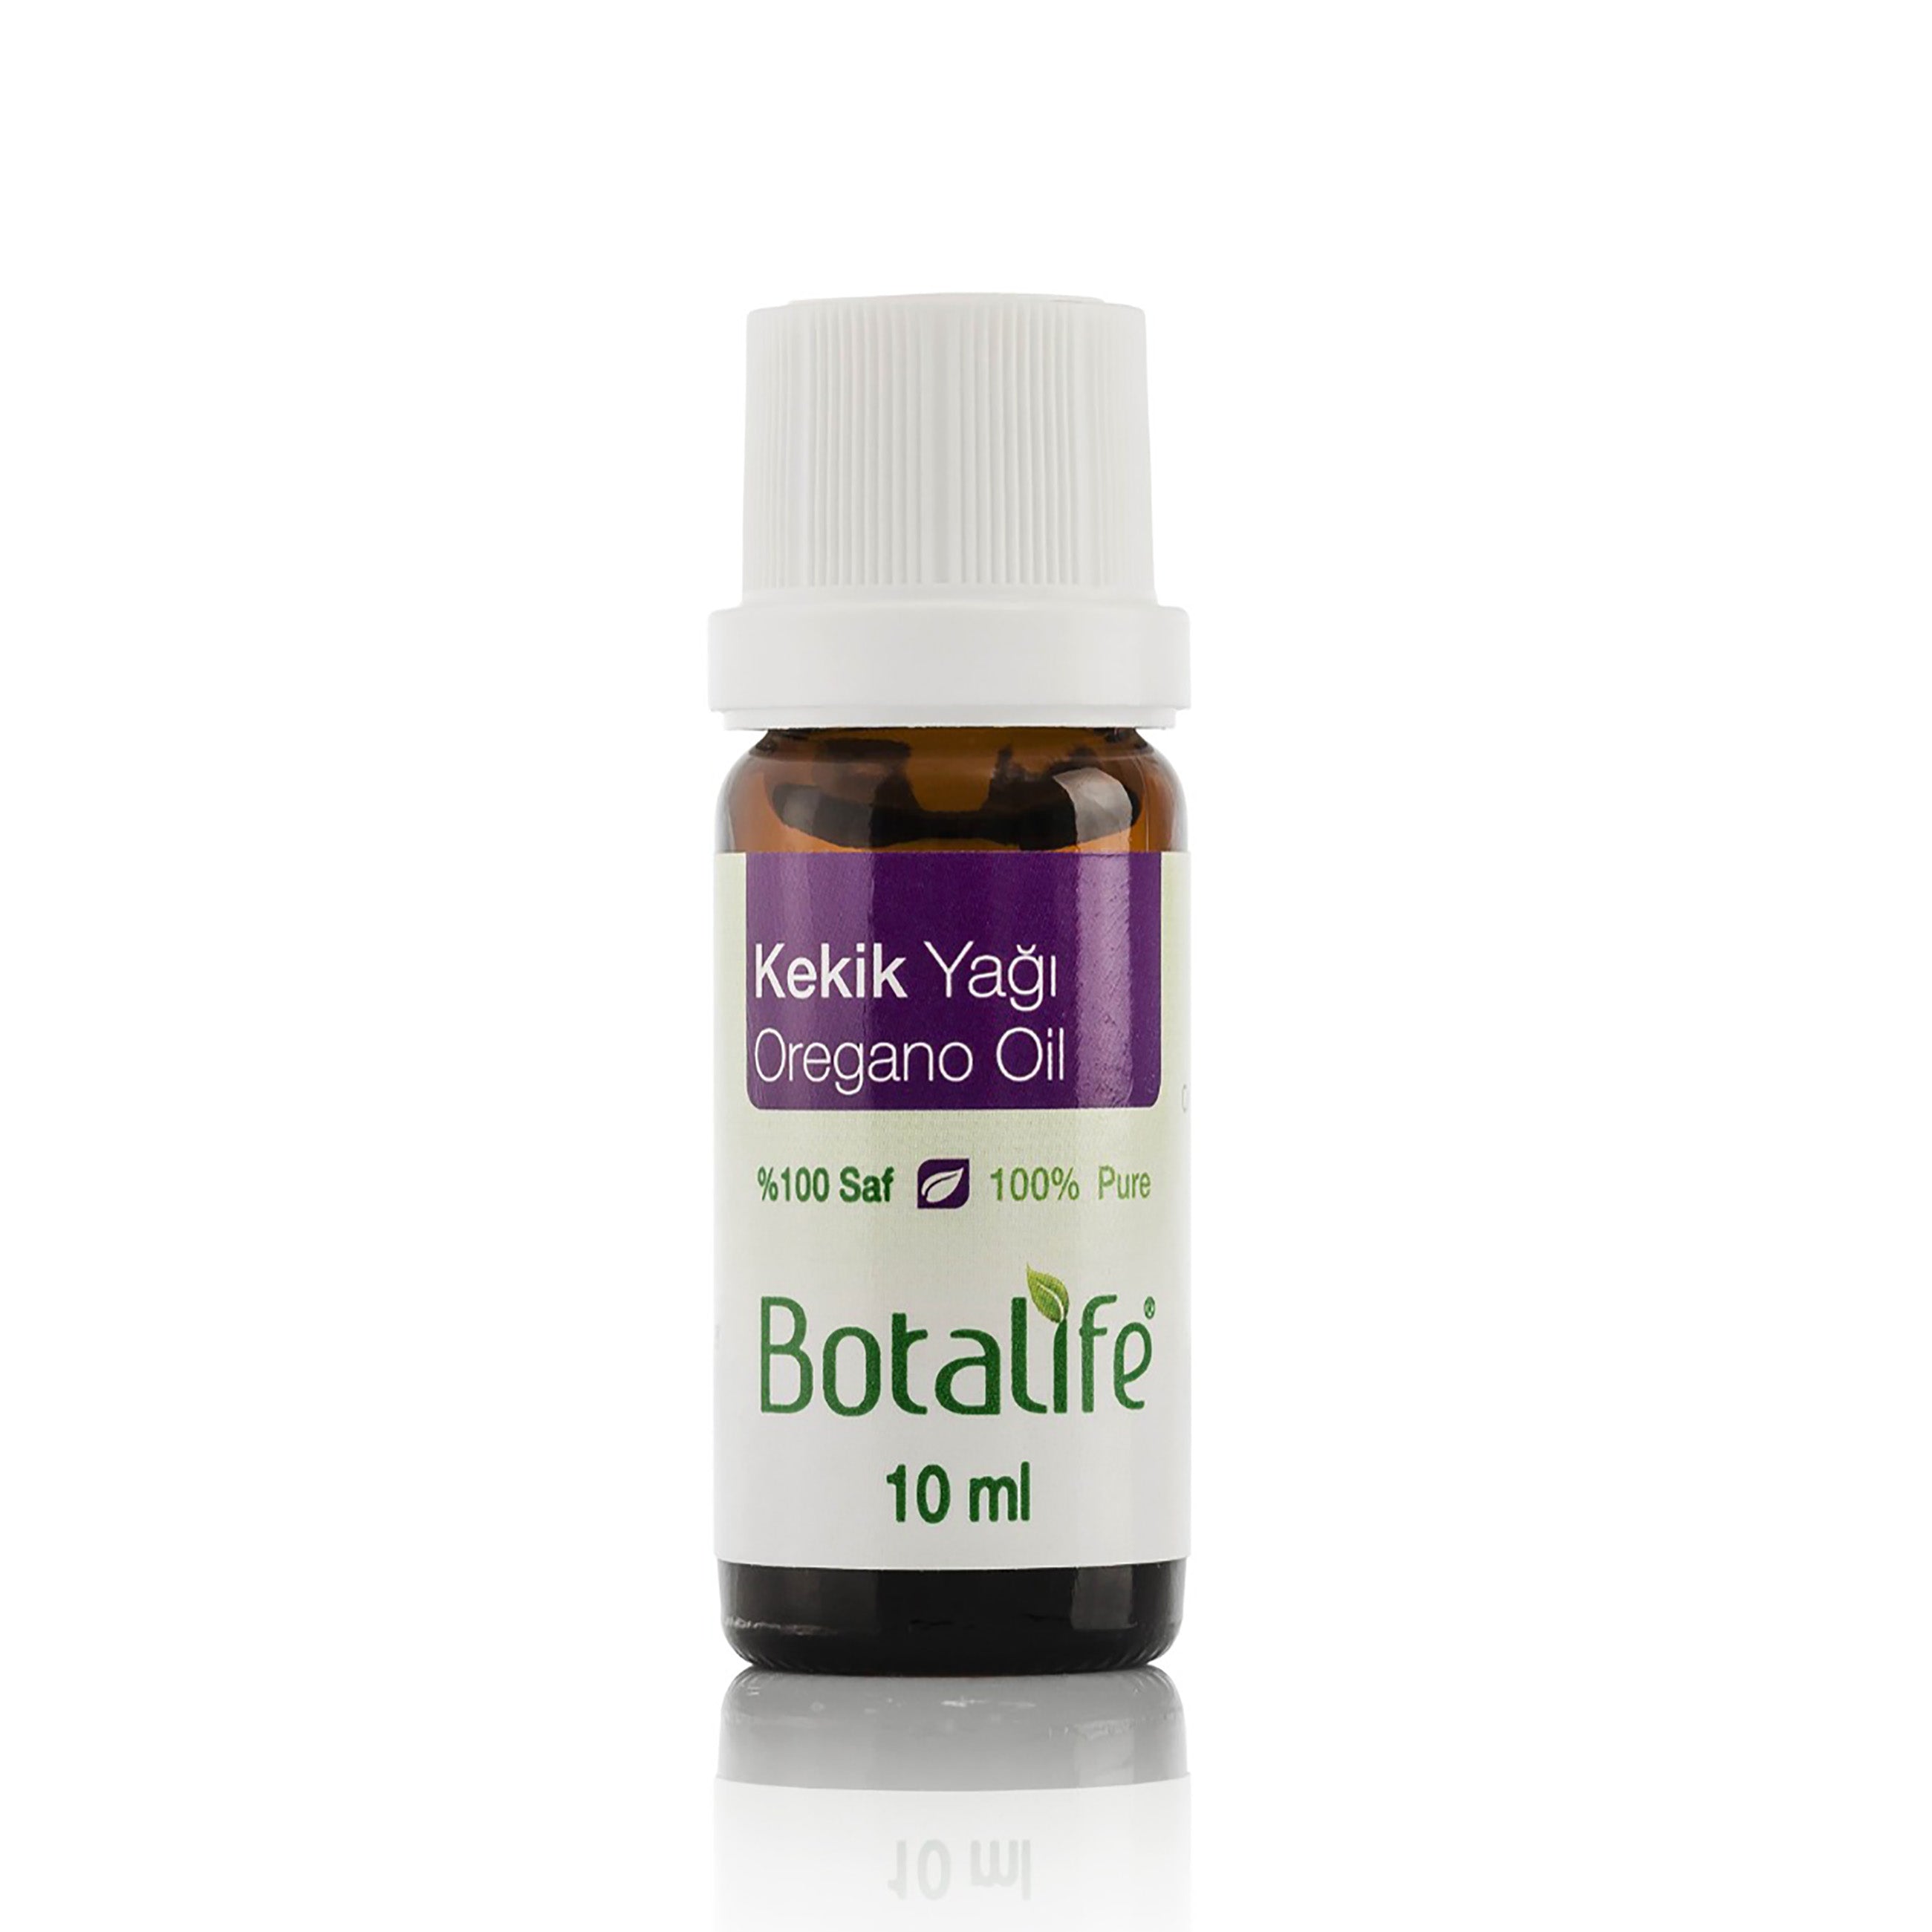 Botalife Oregano Essential Oil antibacterial, antiviral and antifungal